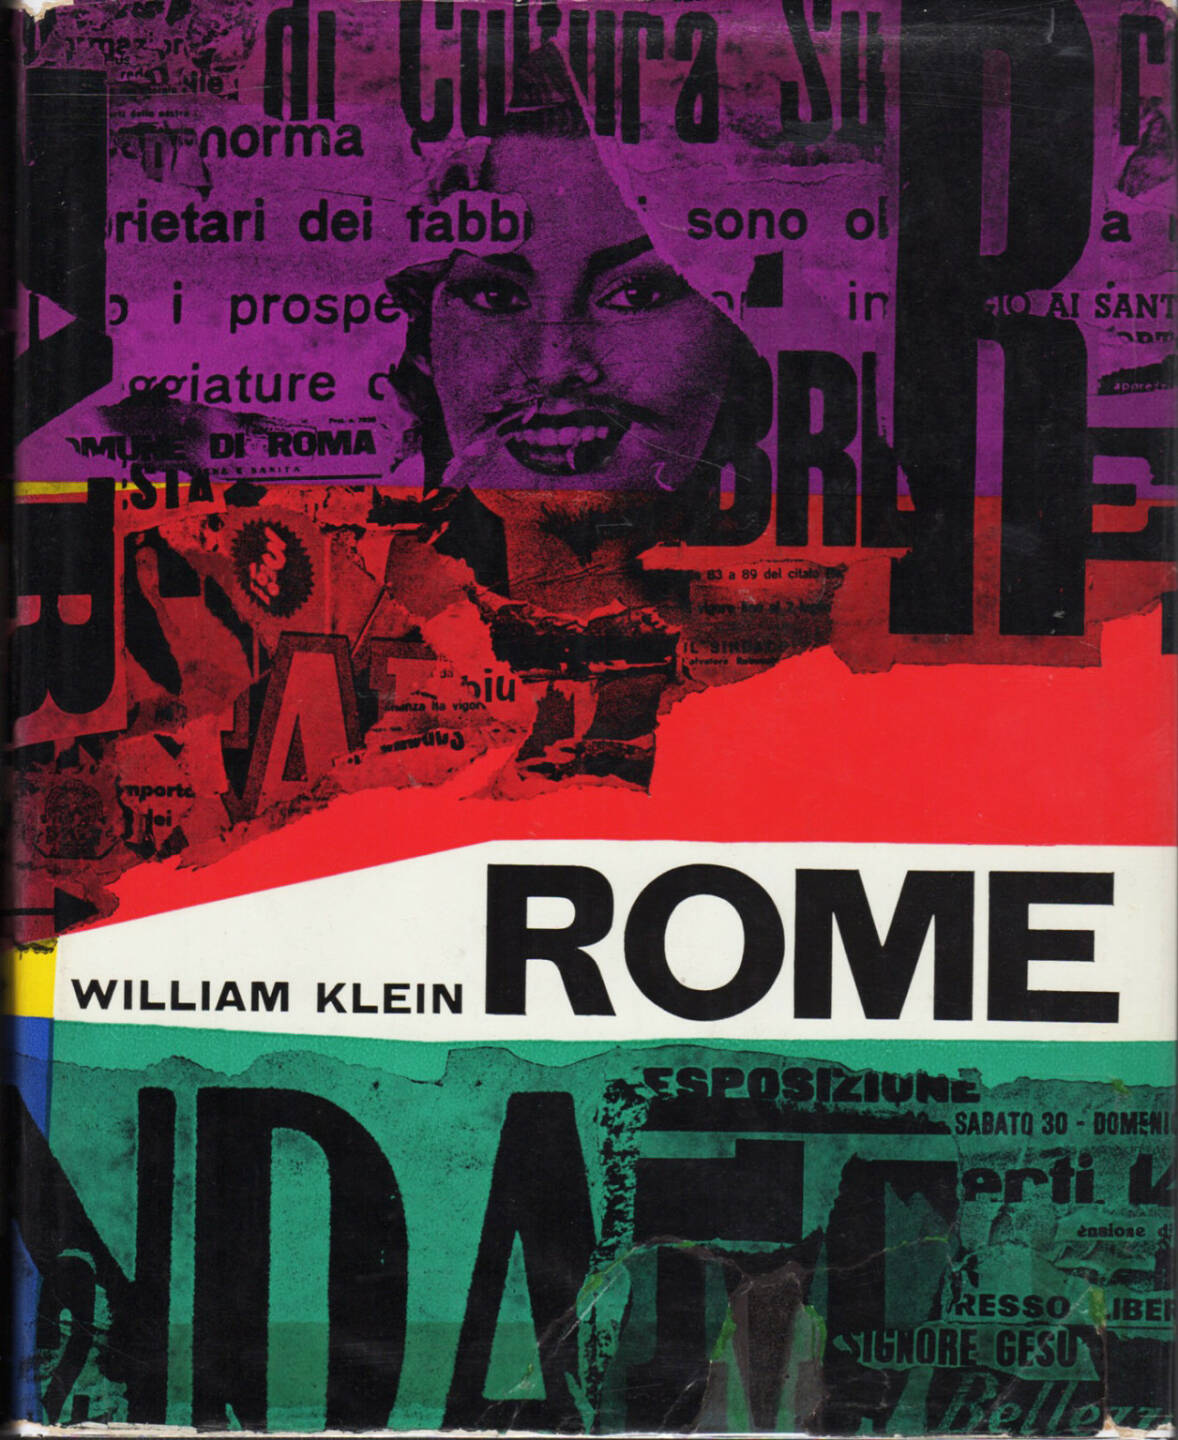 William Klein - Rome, Giangiacomo Feltrinelli Editore 1959, Cover - http://josefchladek.com/book/william_klein_-_rome